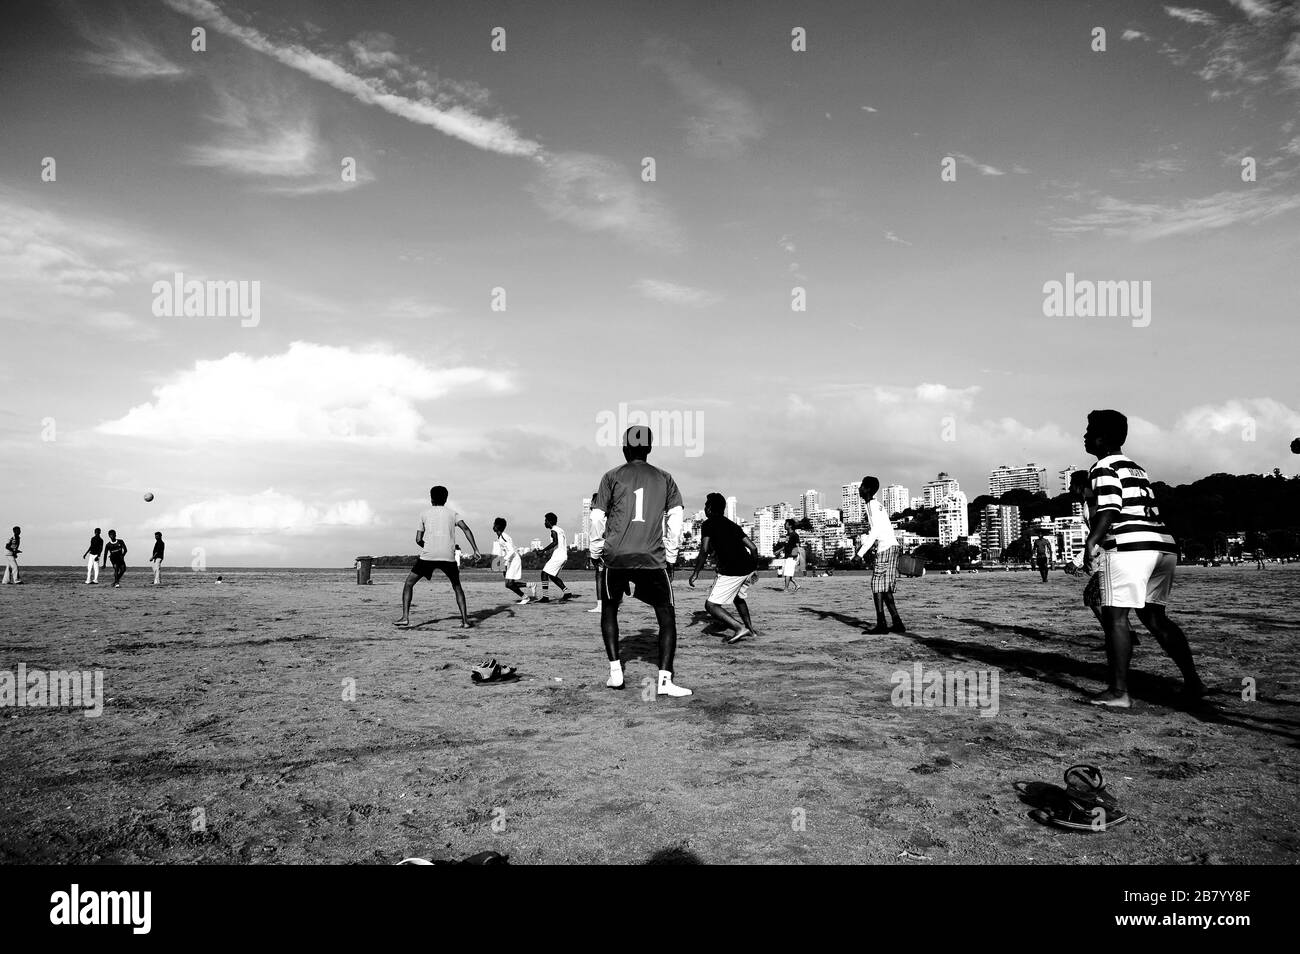 Adolescents jouant au football sur la plage, Chowpatty, Girgaon, Bombay, Maharashtra, Inde, Asie Banque D'Images